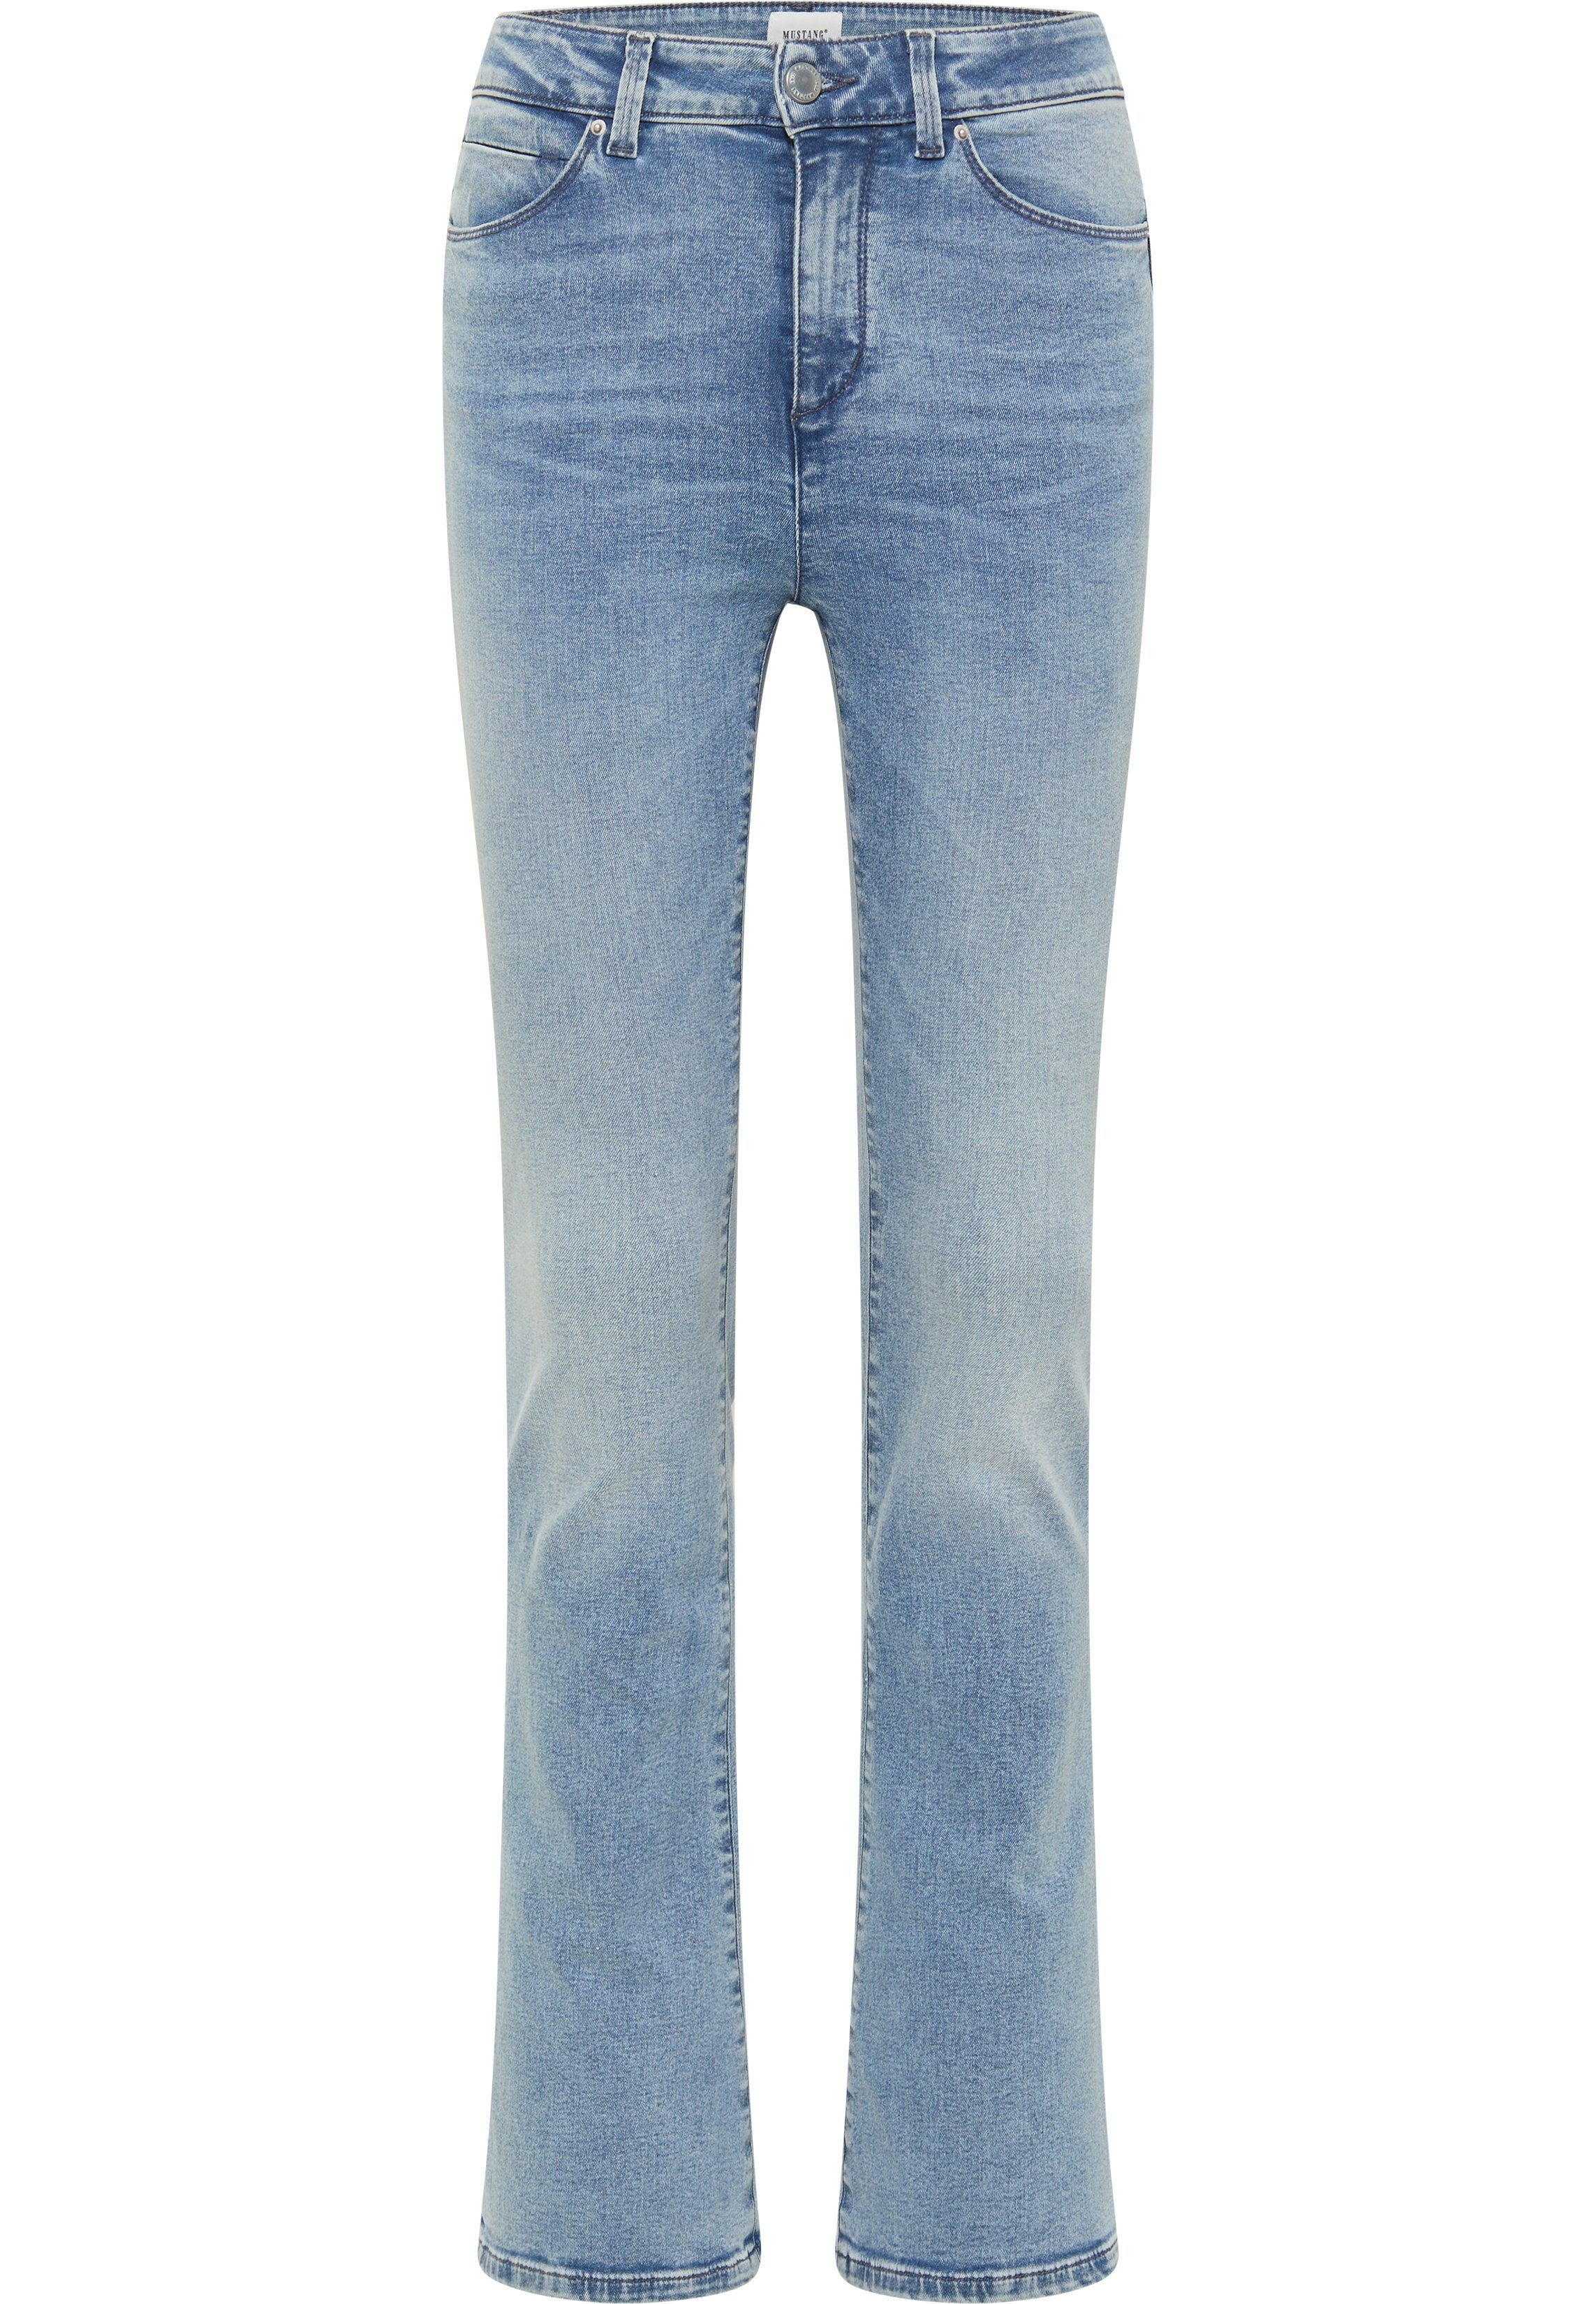 MUSTANG Skinny-fit-Jeans Flared Style Georgia Skinny hellblau-5000203